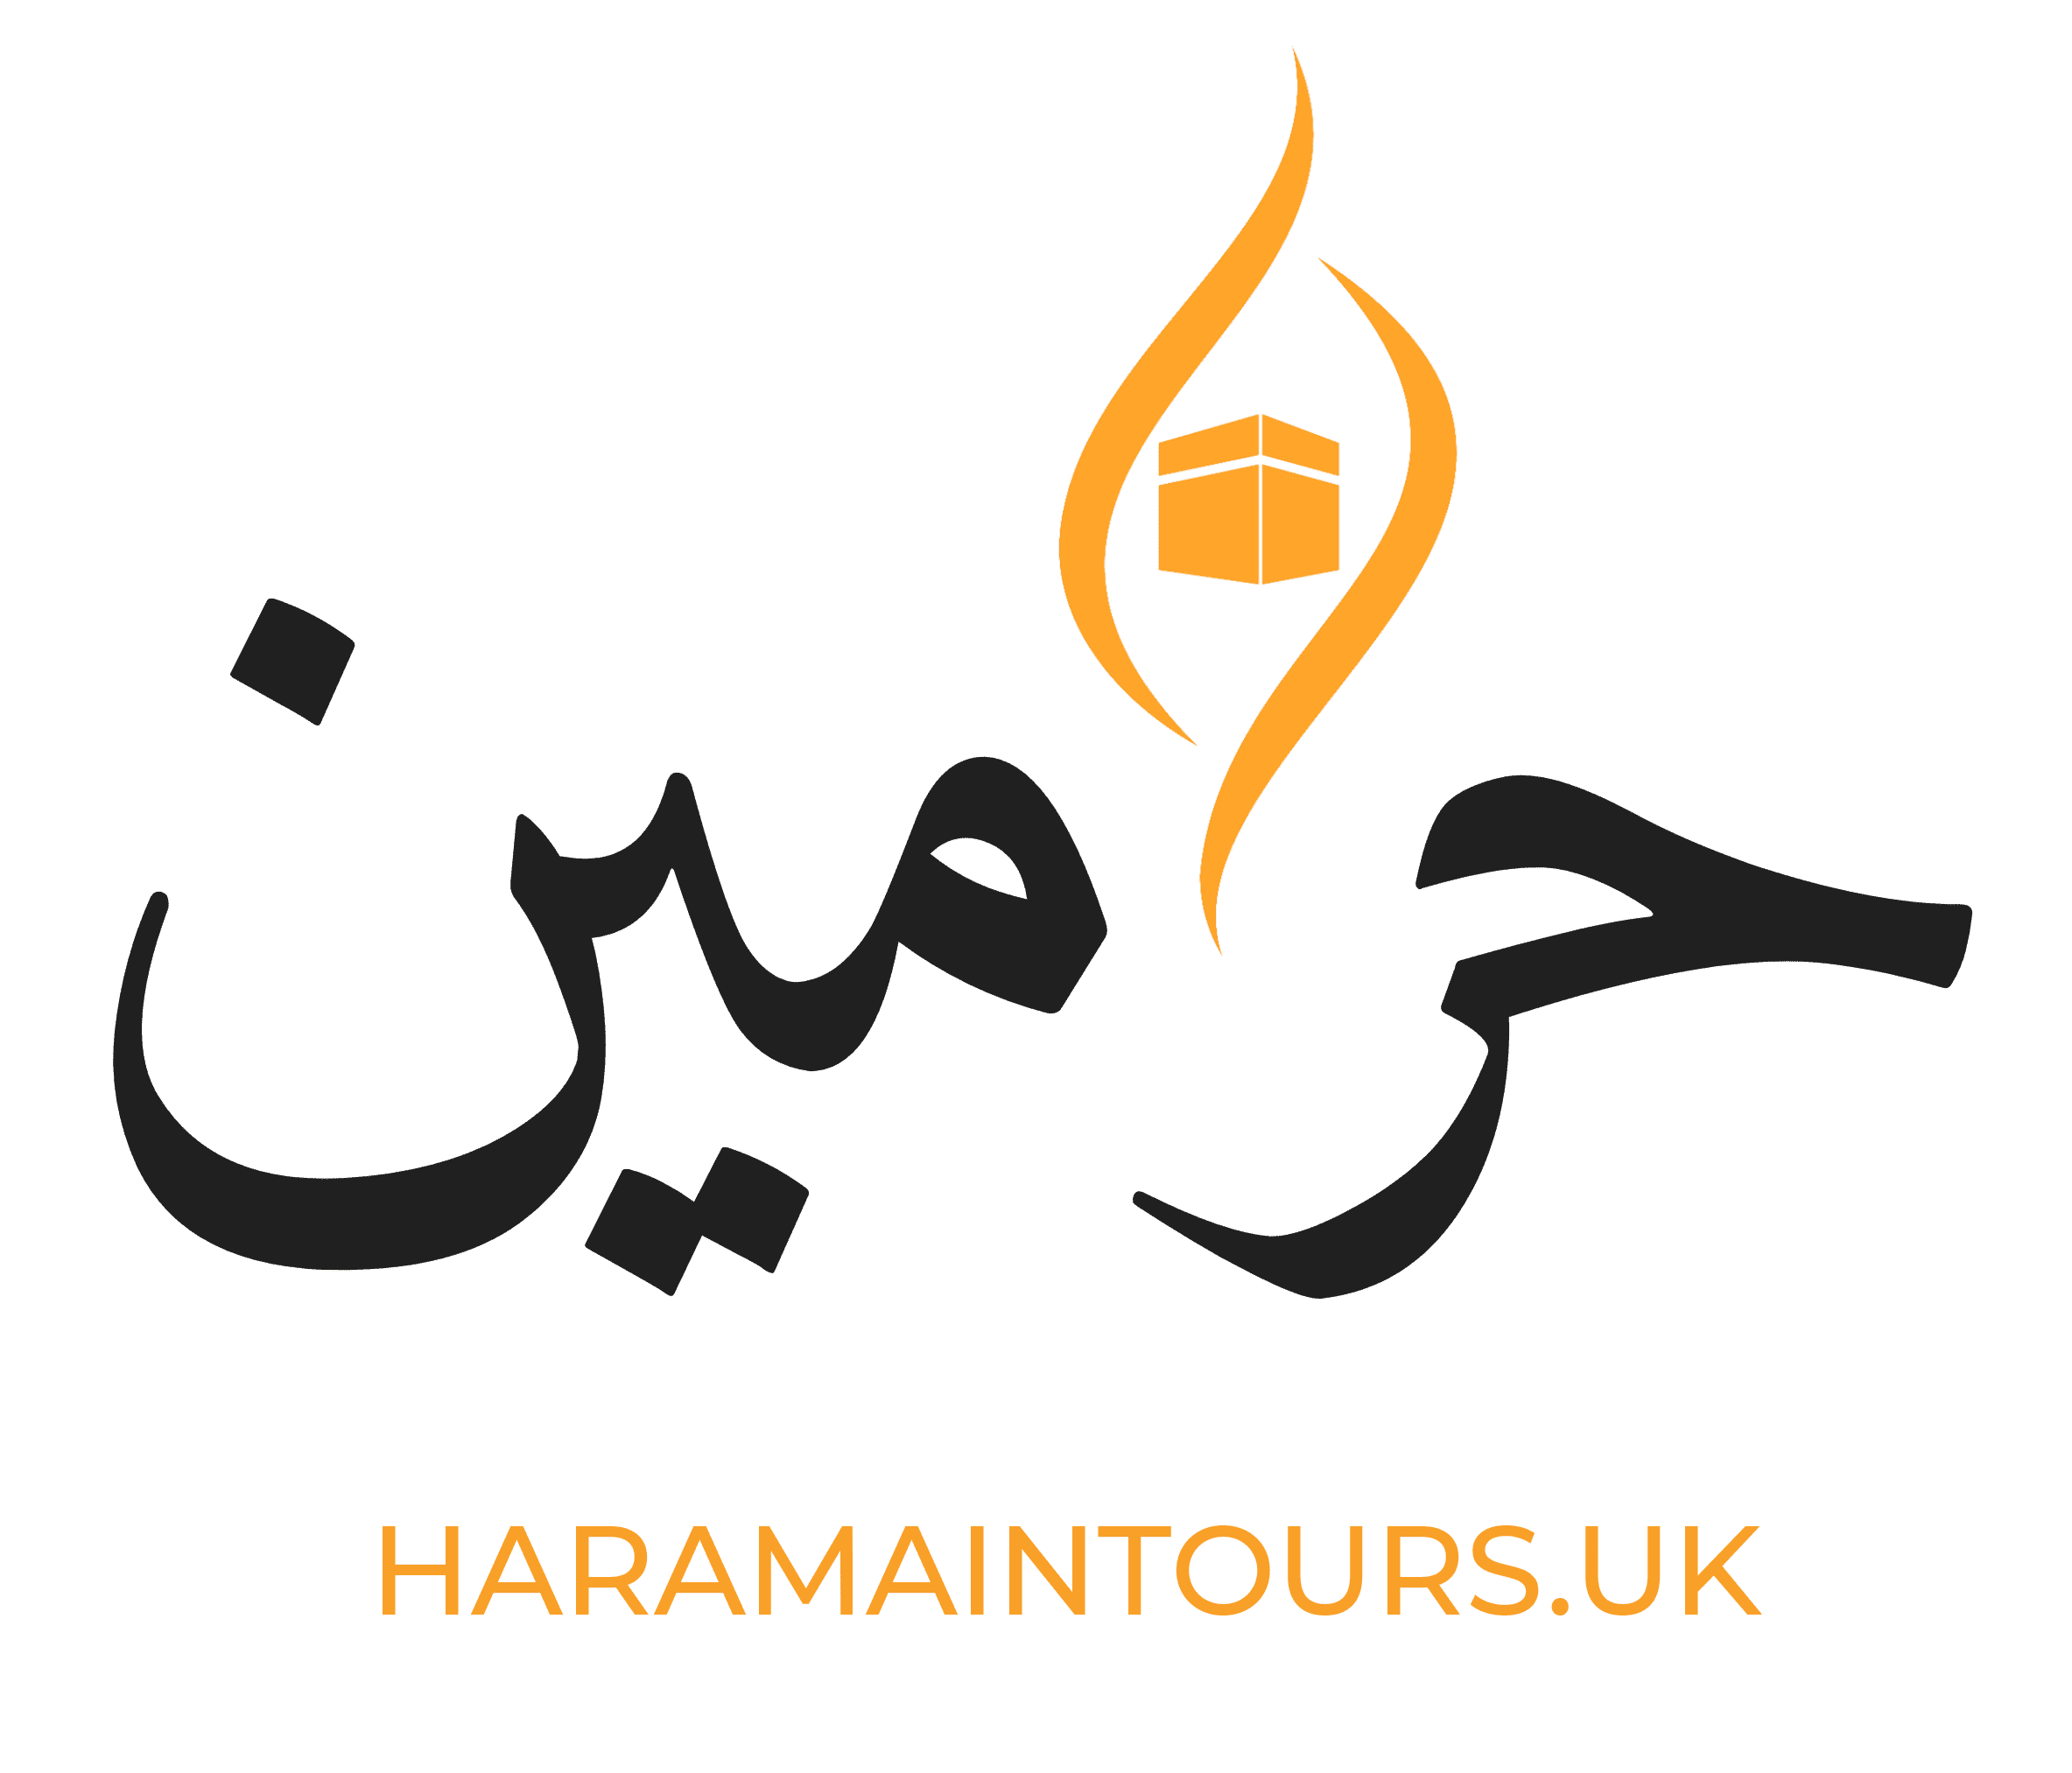 HARAMAIN TOURS